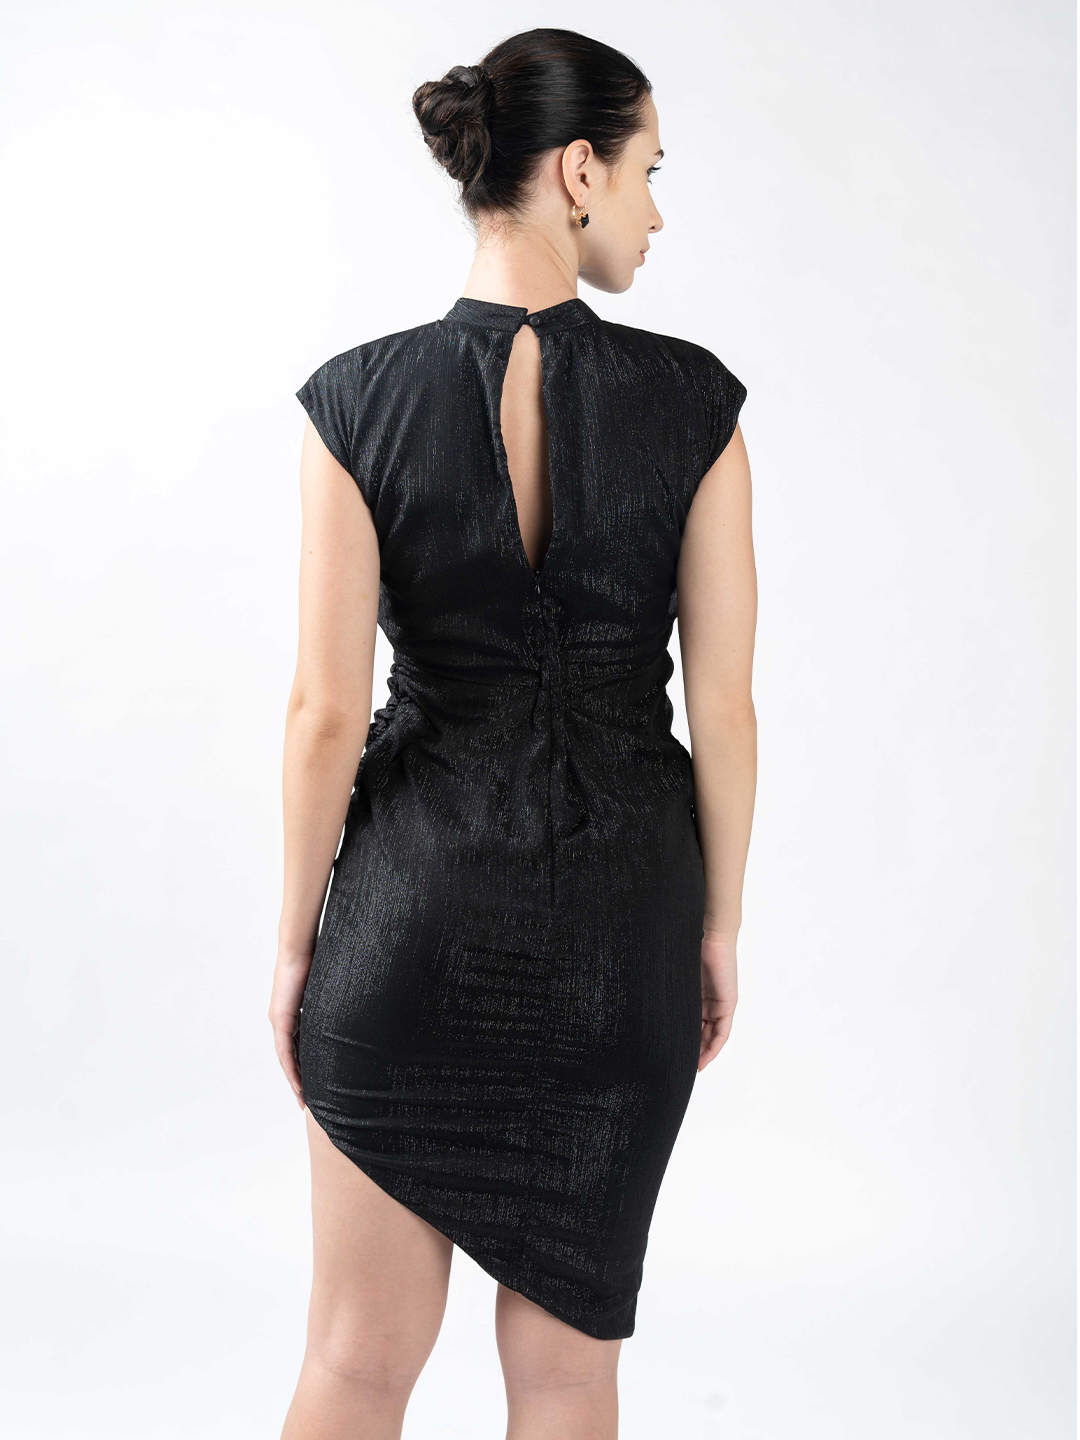 Black gather dress with collar neckline -1